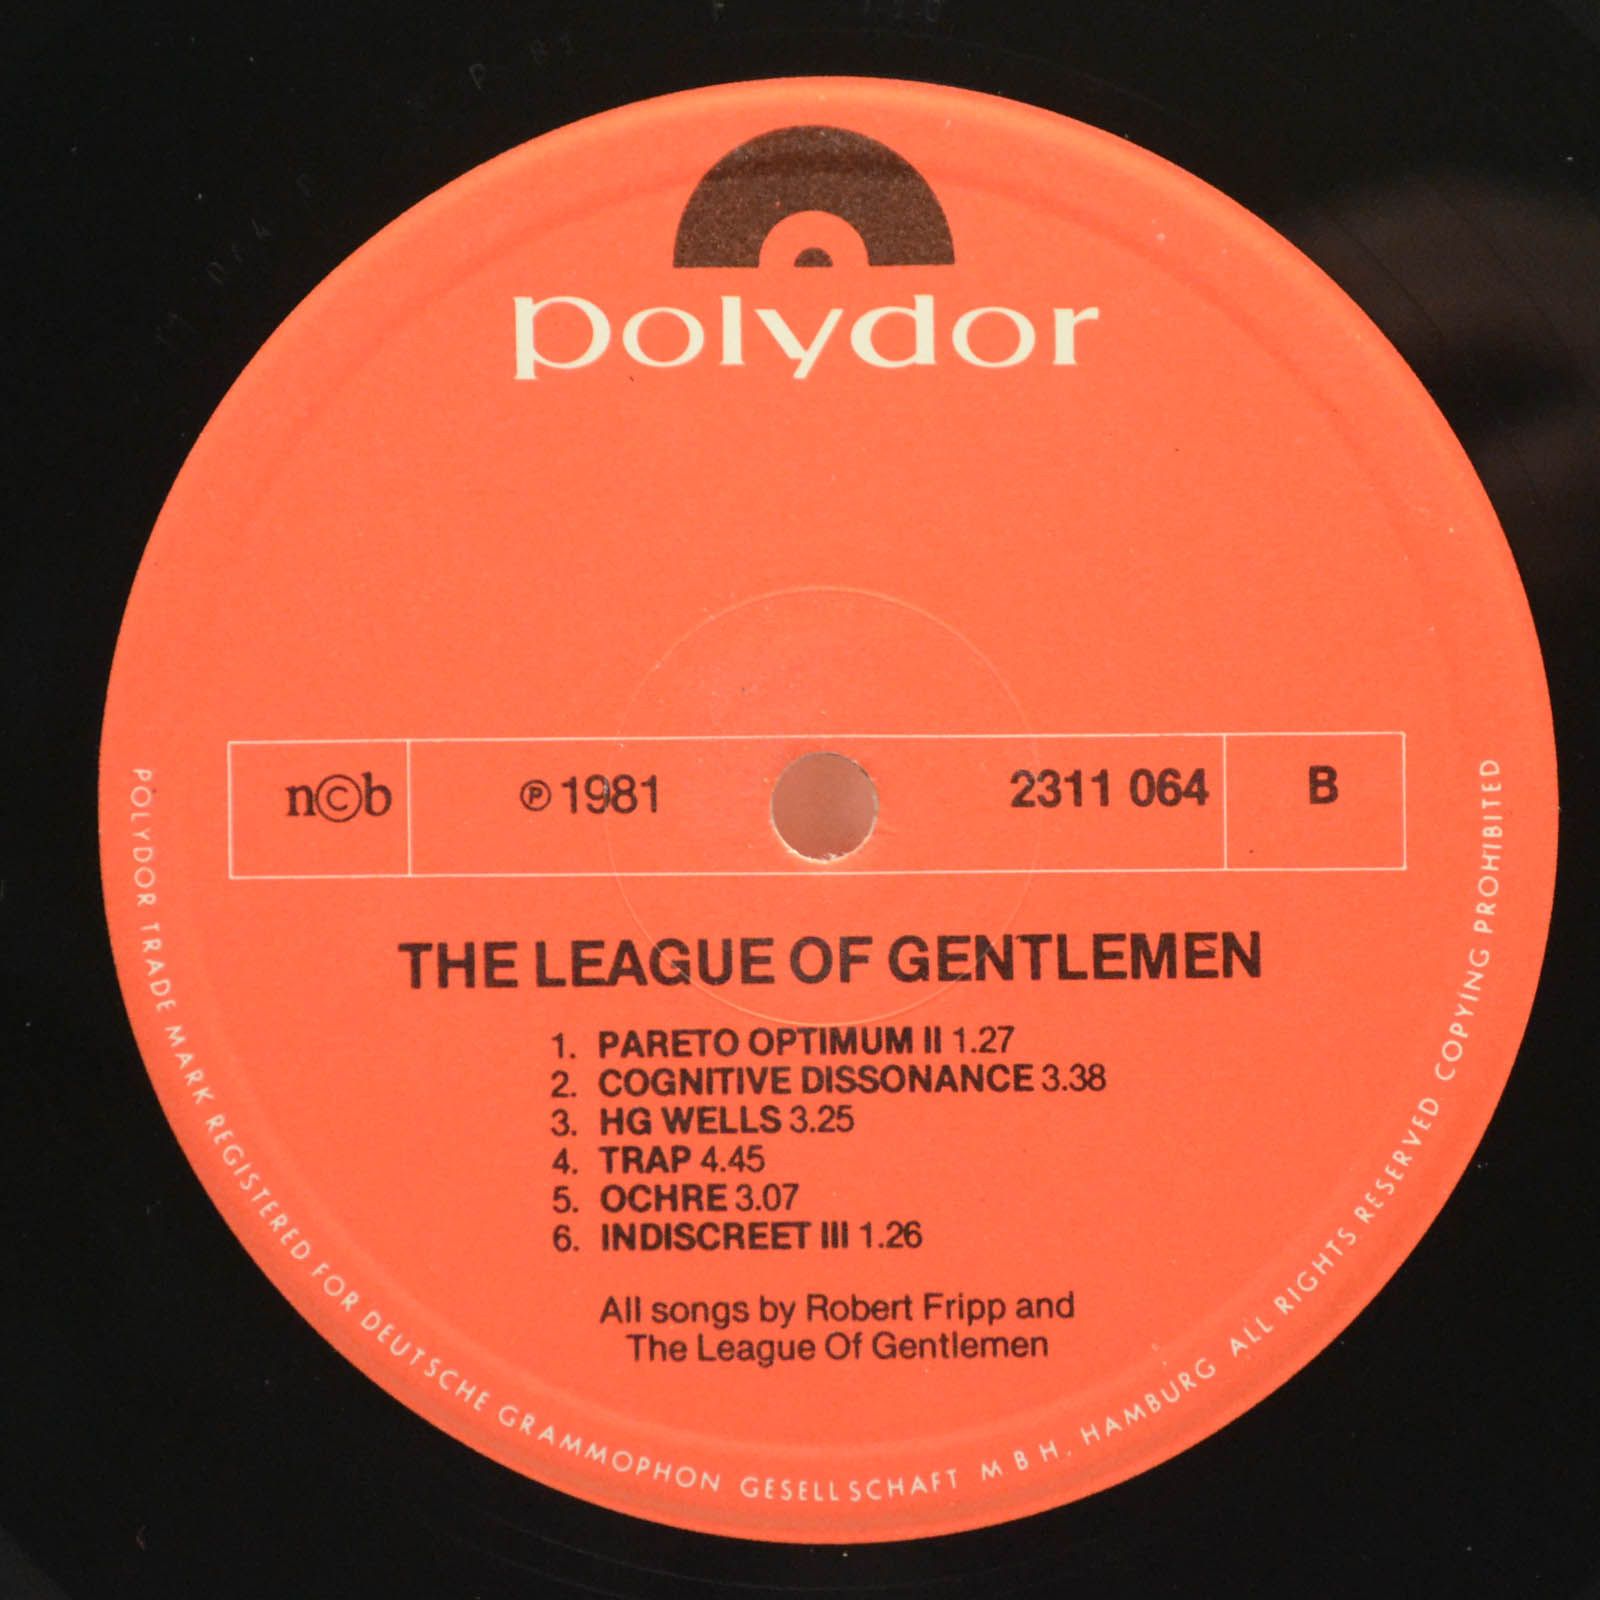 Robert Fripp / The League Of Gentlemen — The League Of Gentlemen, 1981